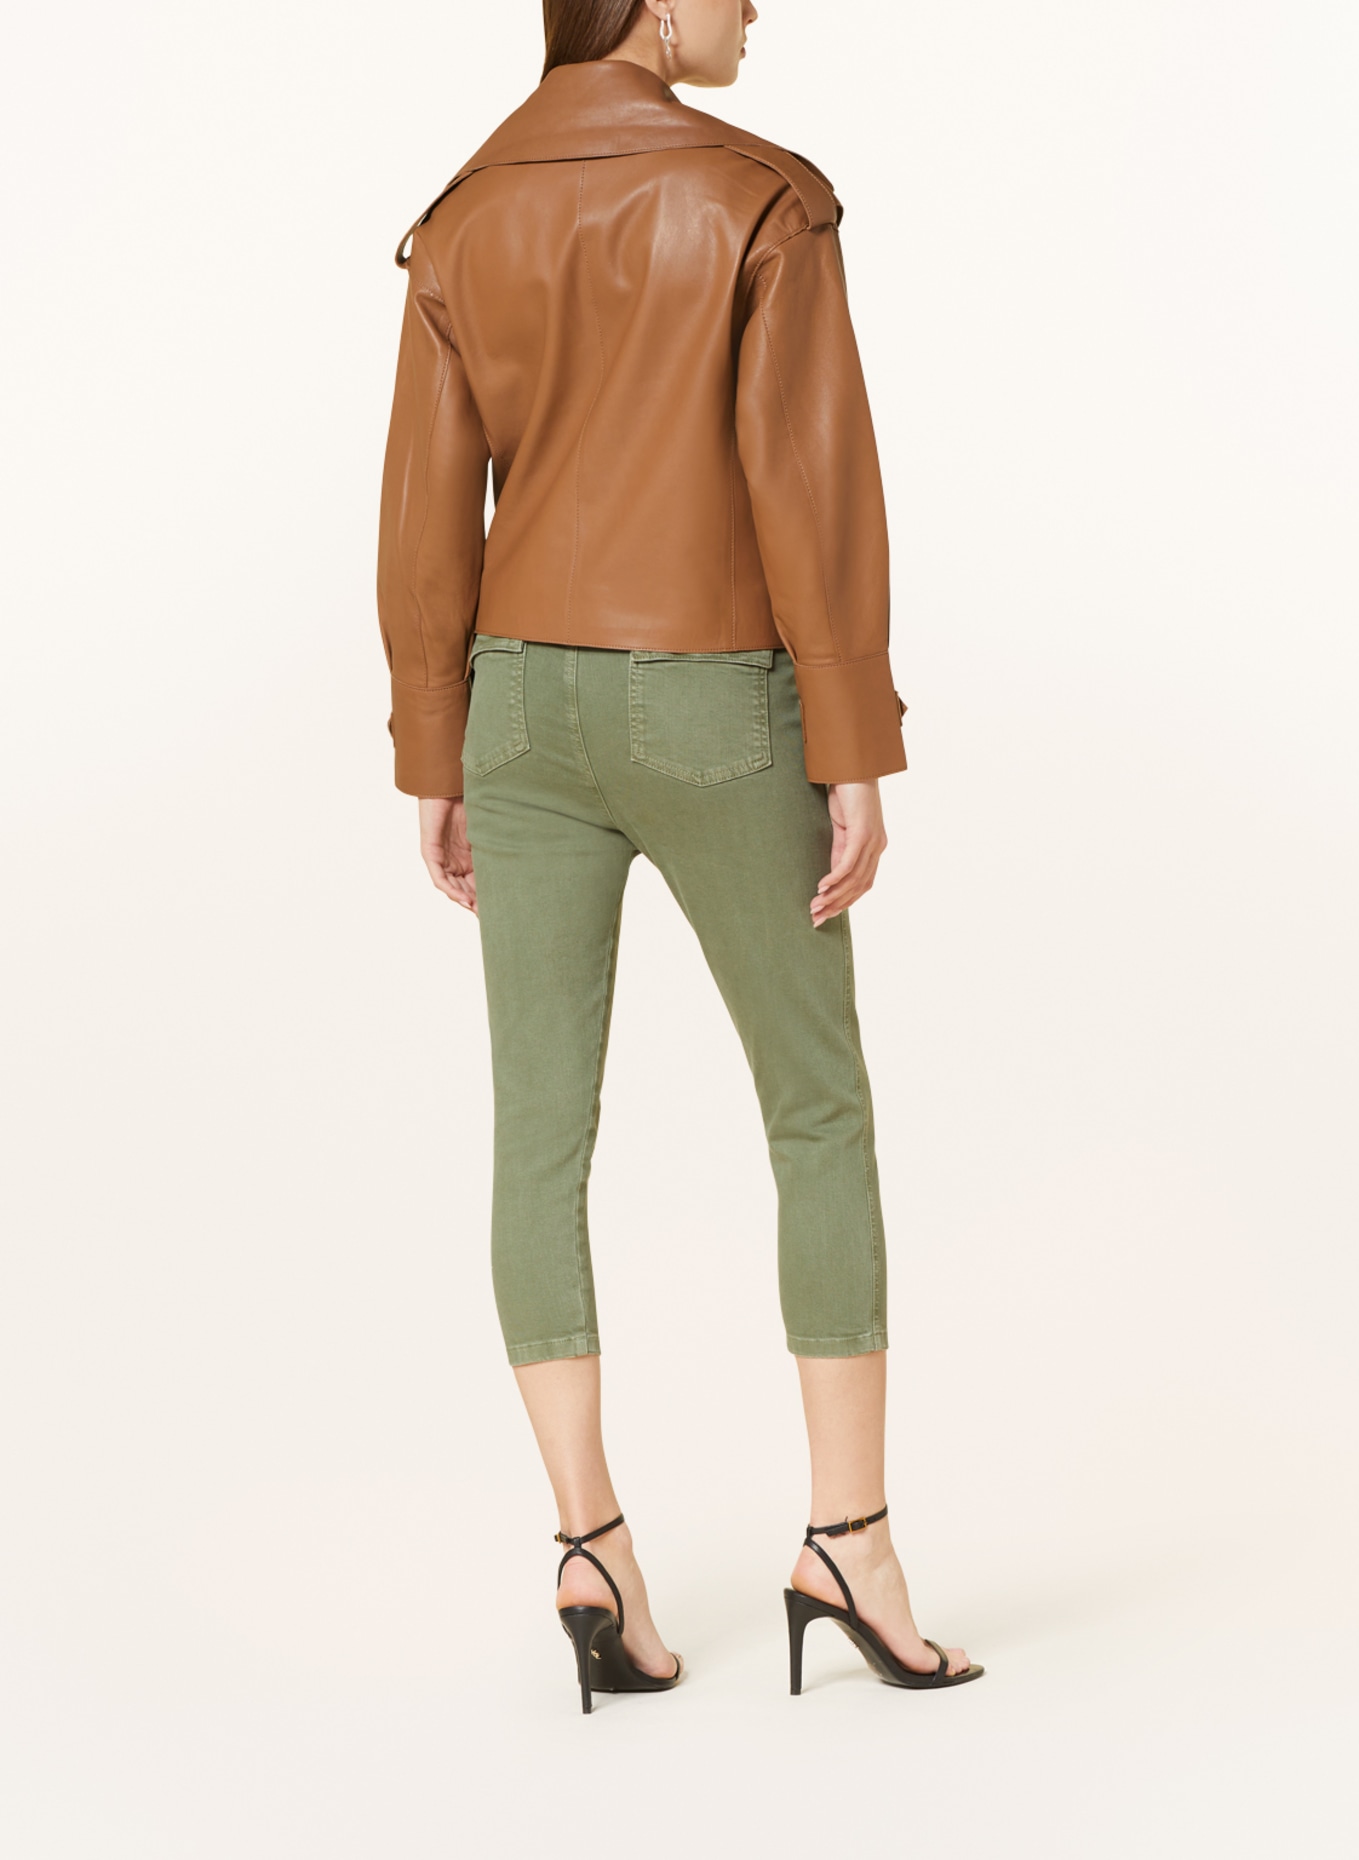 GITTA BANKO Leather jacket ALEXA, Color: COGNAC (Image 3)